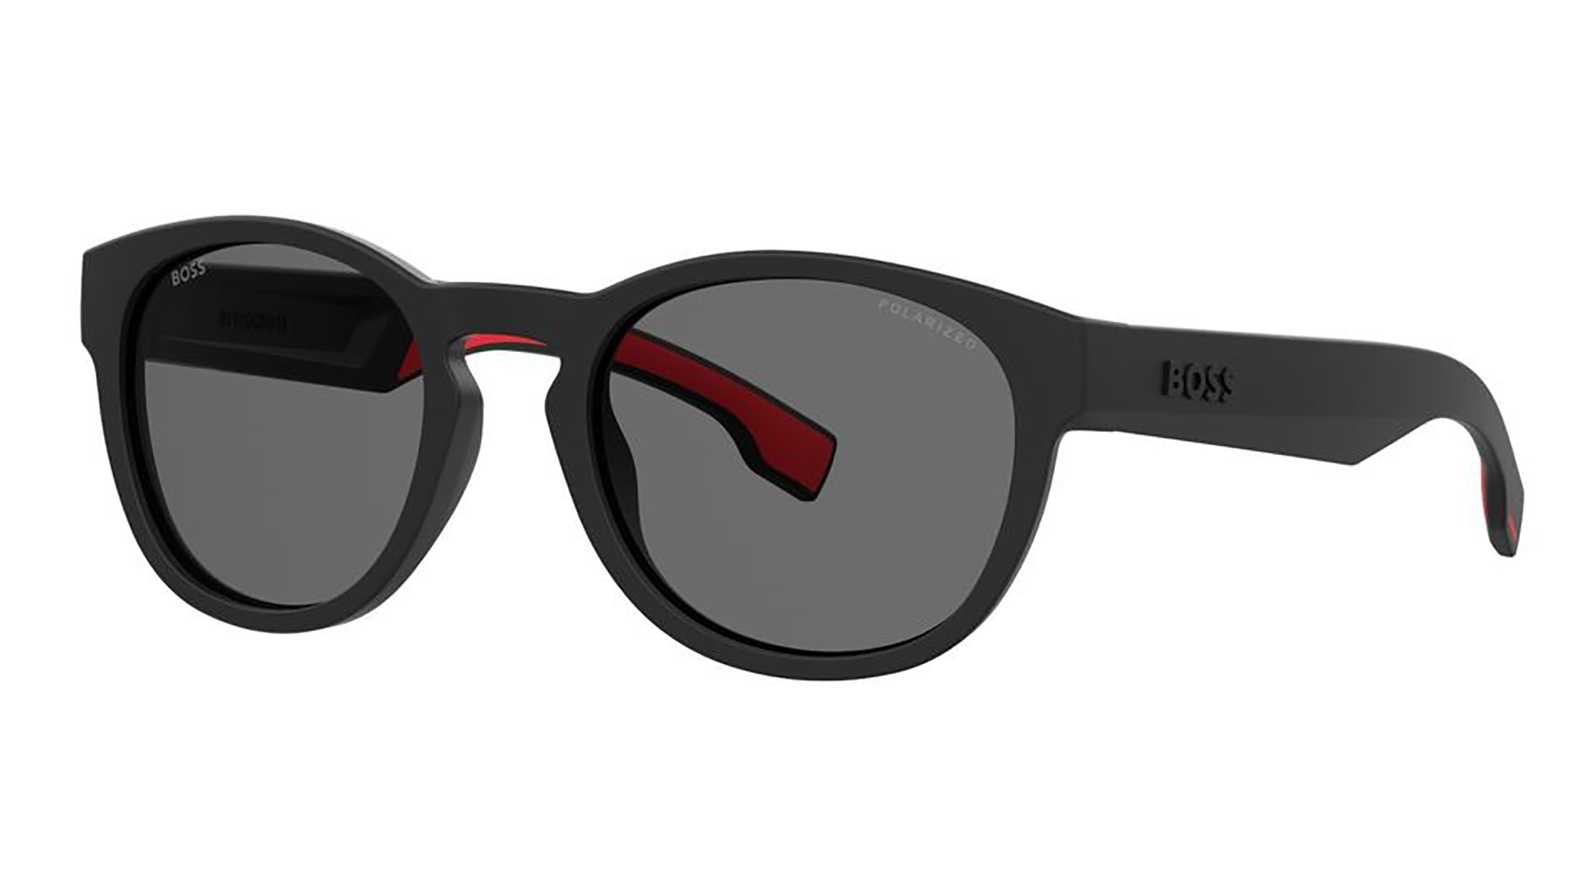 Hugo Boss 1452-S 003 lukky солнцезащитные очки круглые с декором